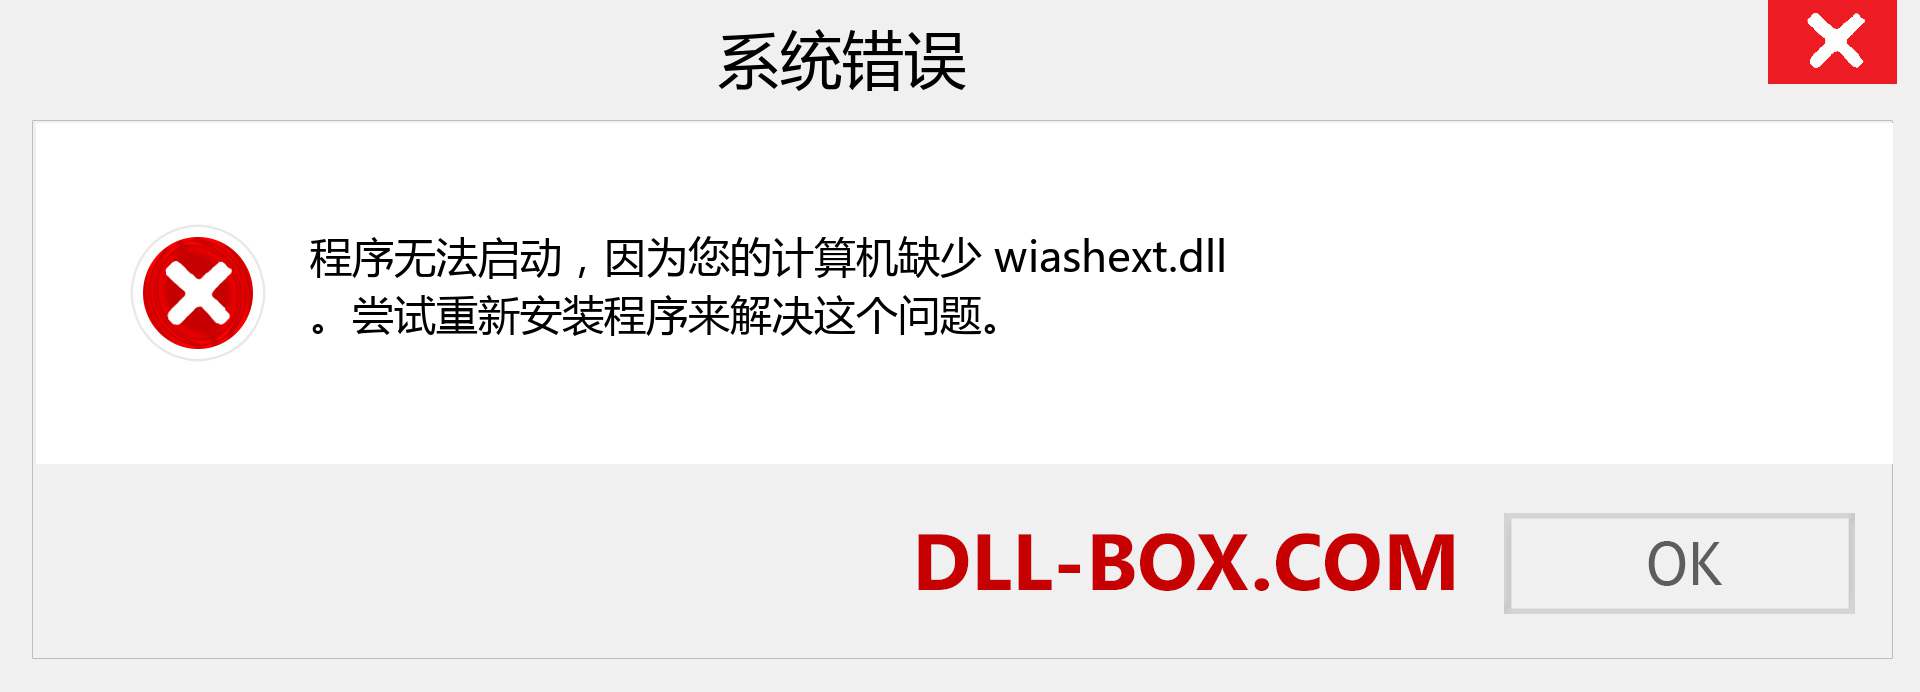 wiashext.dll 文件丢失？。 适用于 Windows 7、8、10 的下载 - 修复 Windows、照片、图像上的 wiashext dll 丢失错误